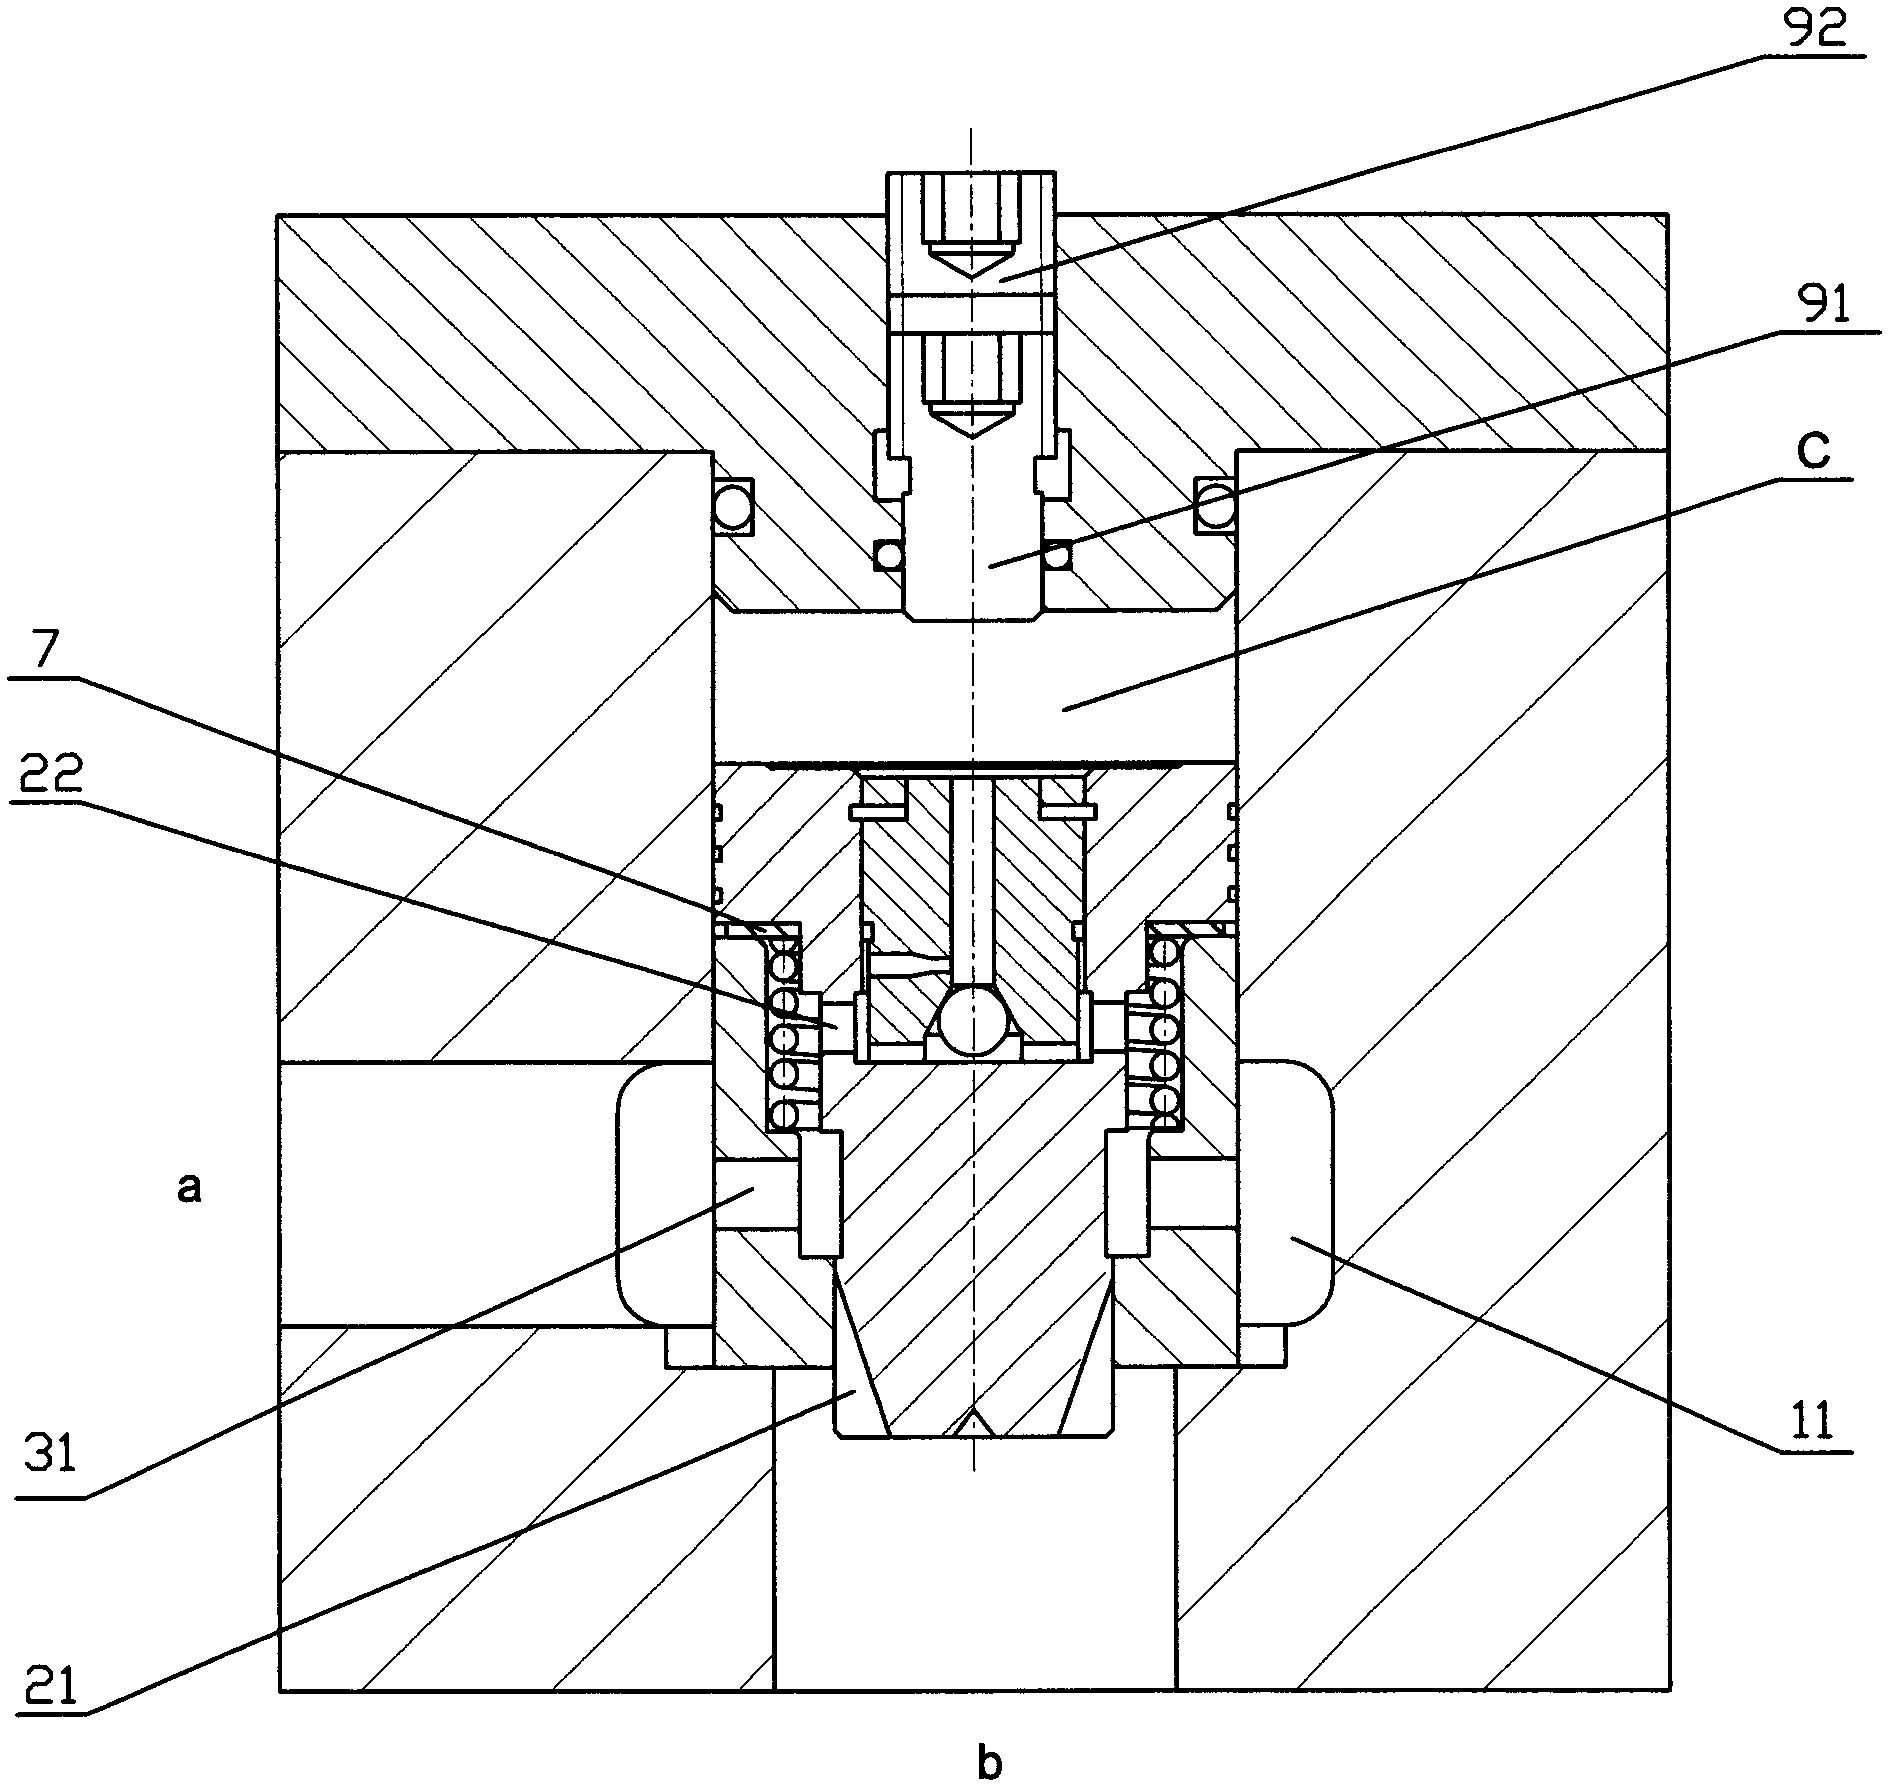 Buffer valve